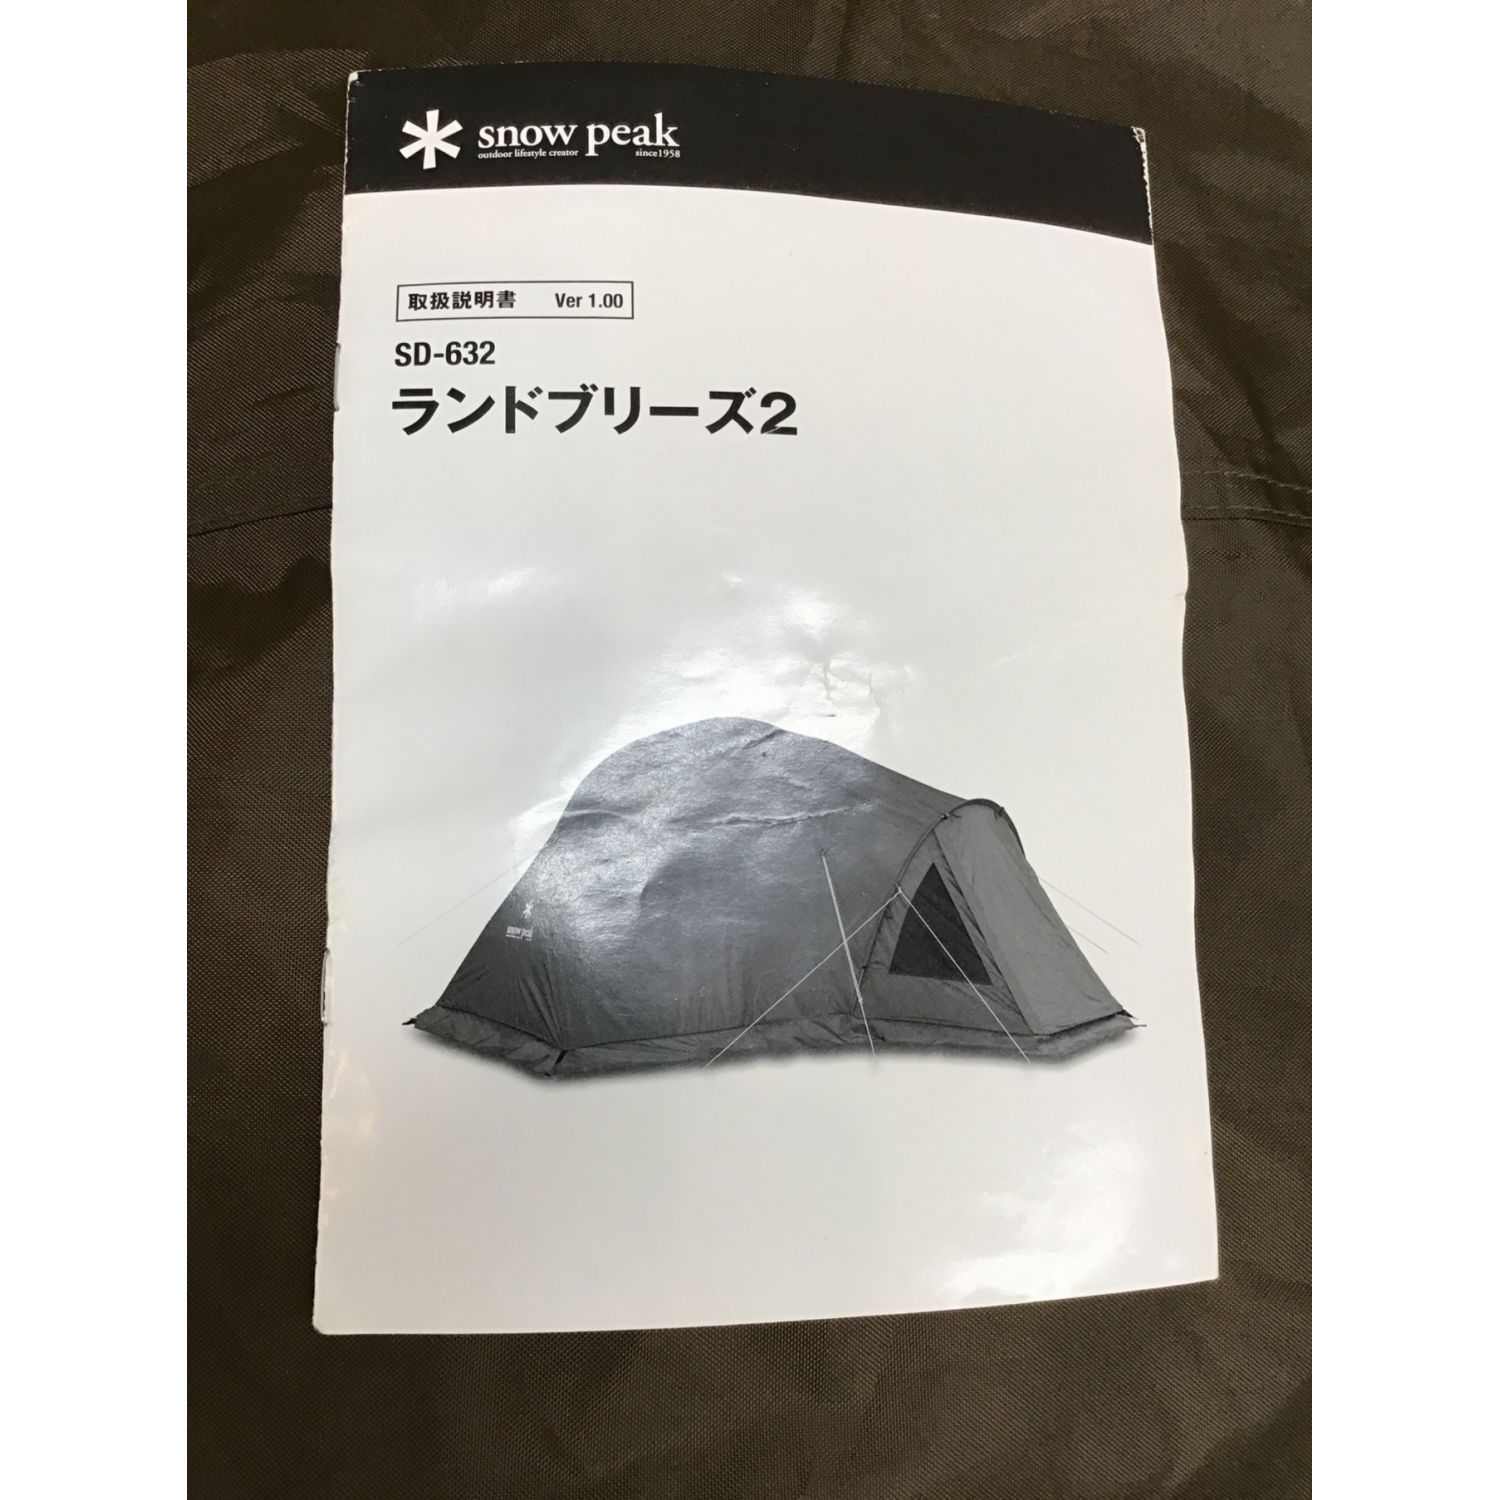 Snow peak (スノーピーク) ドームテント 別売りグランドシート付 